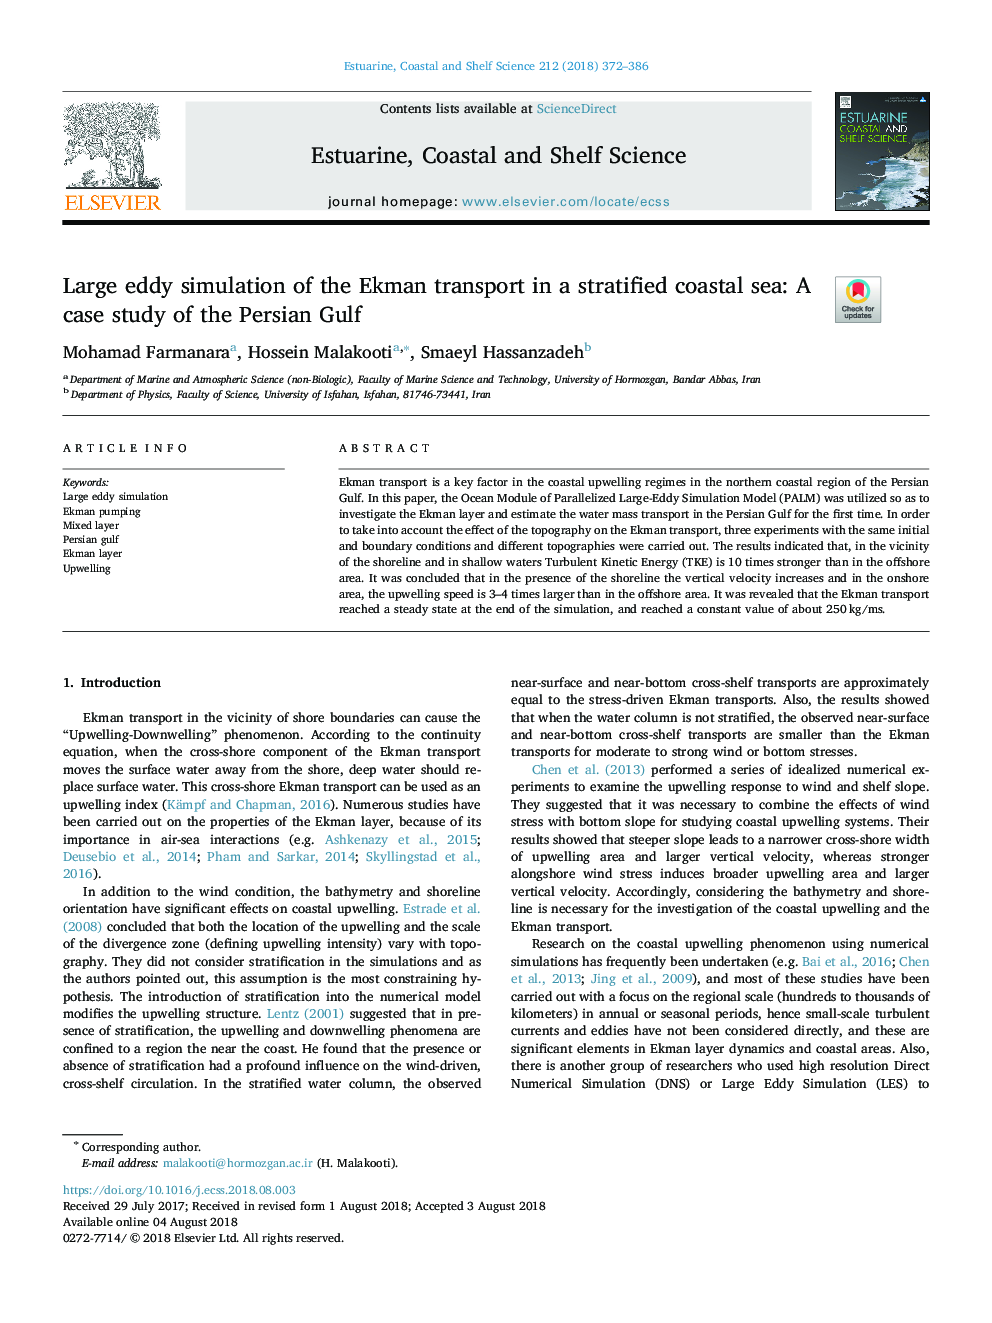 شبیه سازی چرخشی بزرگ حمل و نقل اکمن در دریای ساحلی طبقه بندی شده: مطالعه موردی خلیج 